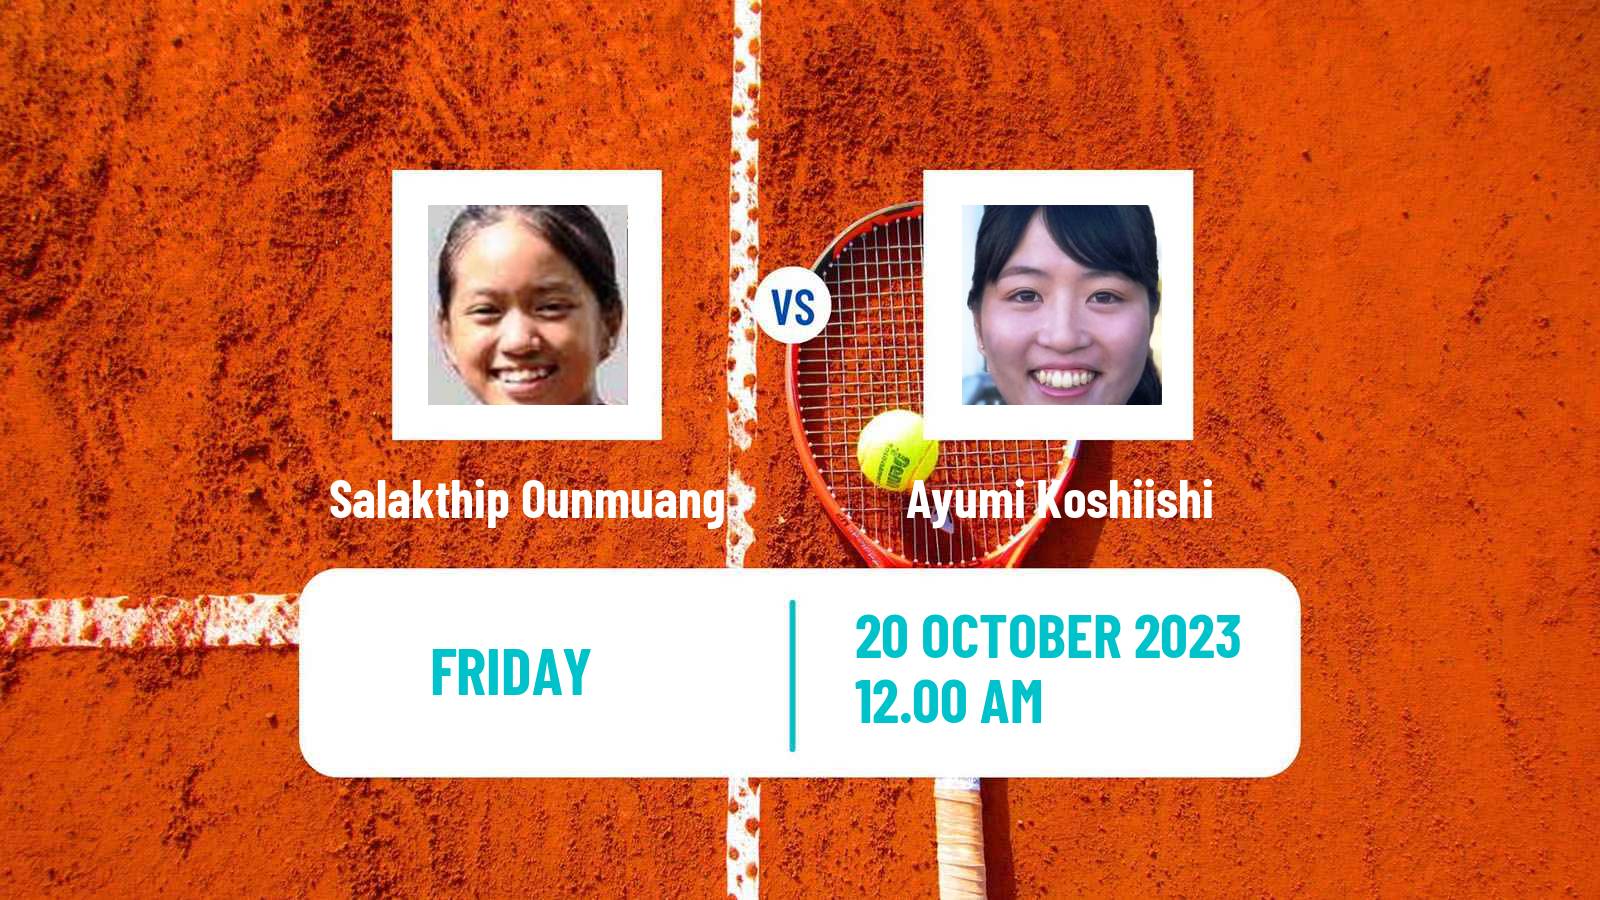 Tennis ITF W15 Hua Hin 2 Women Salakthip Ounmuang - Ayumi Koshiishi